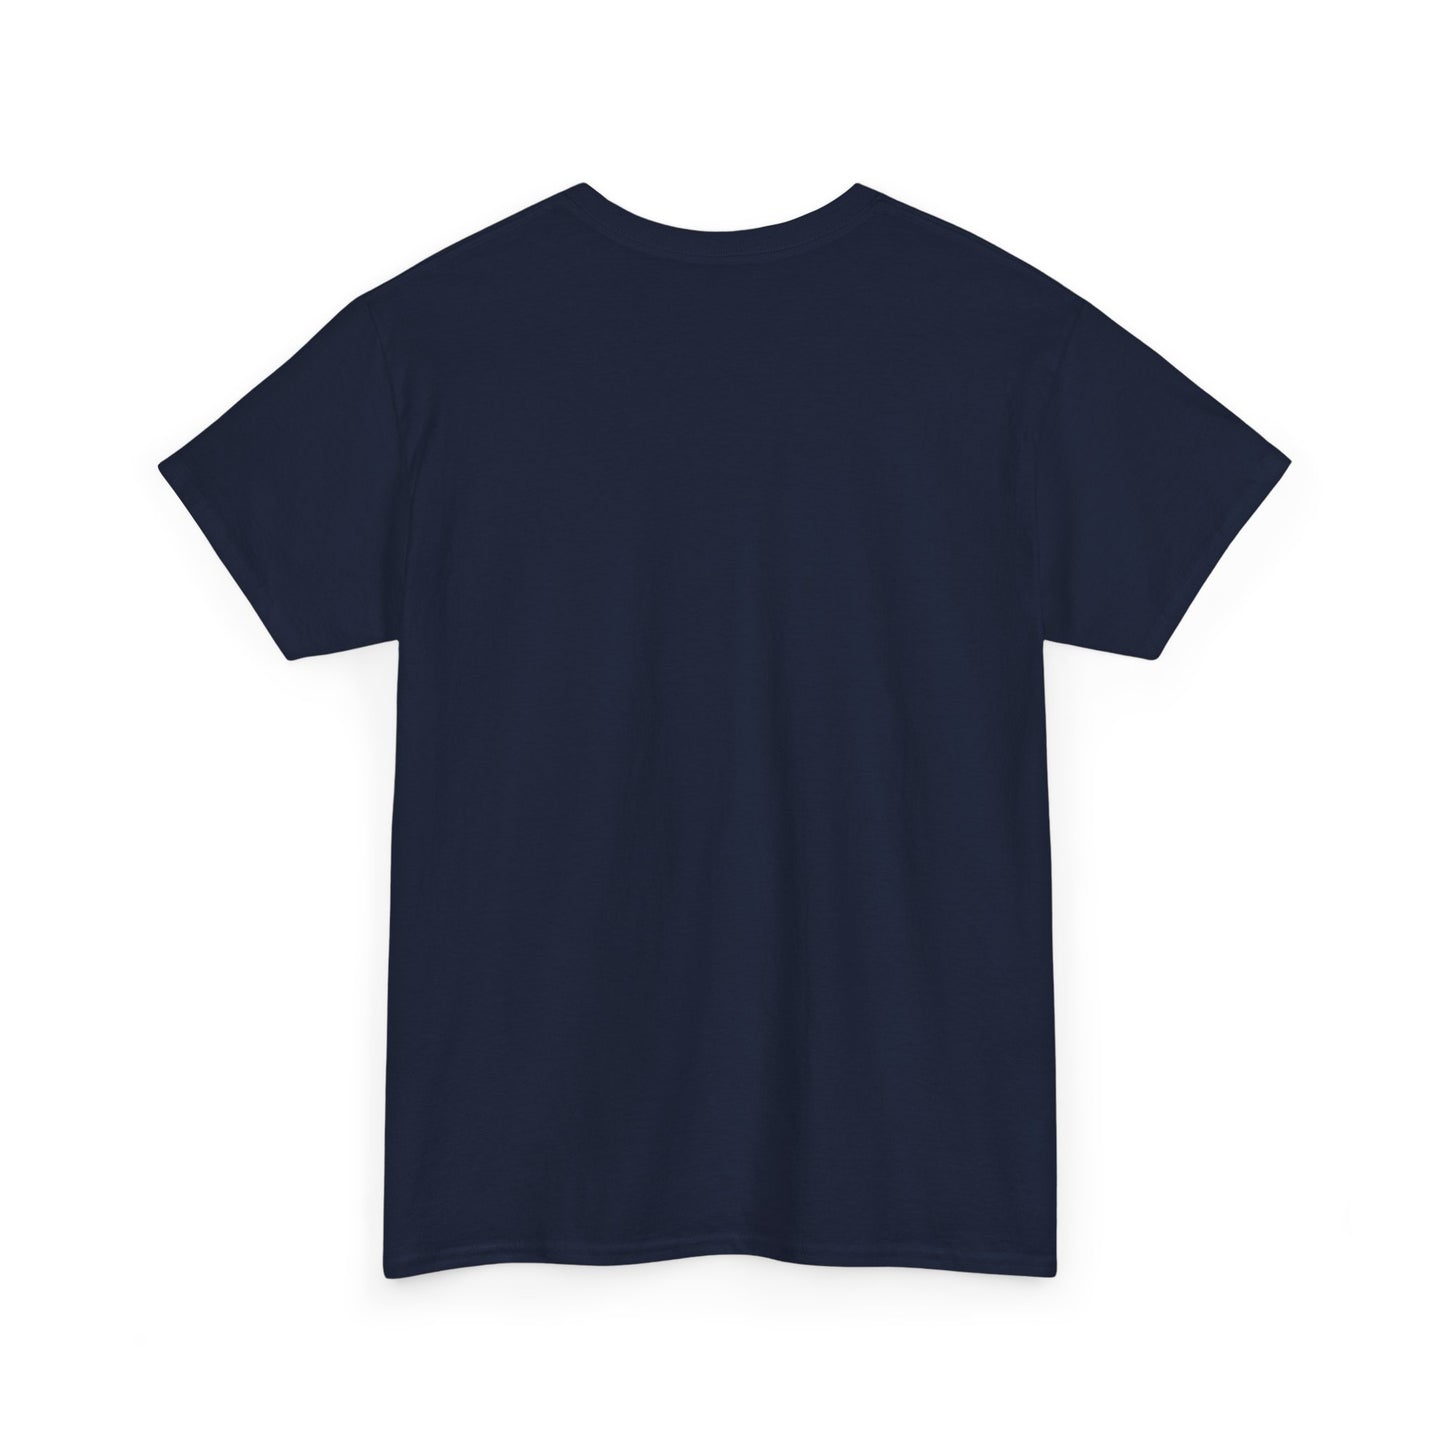 Unisex Heavy Cotton Graphic design (Wolf) T-shirt